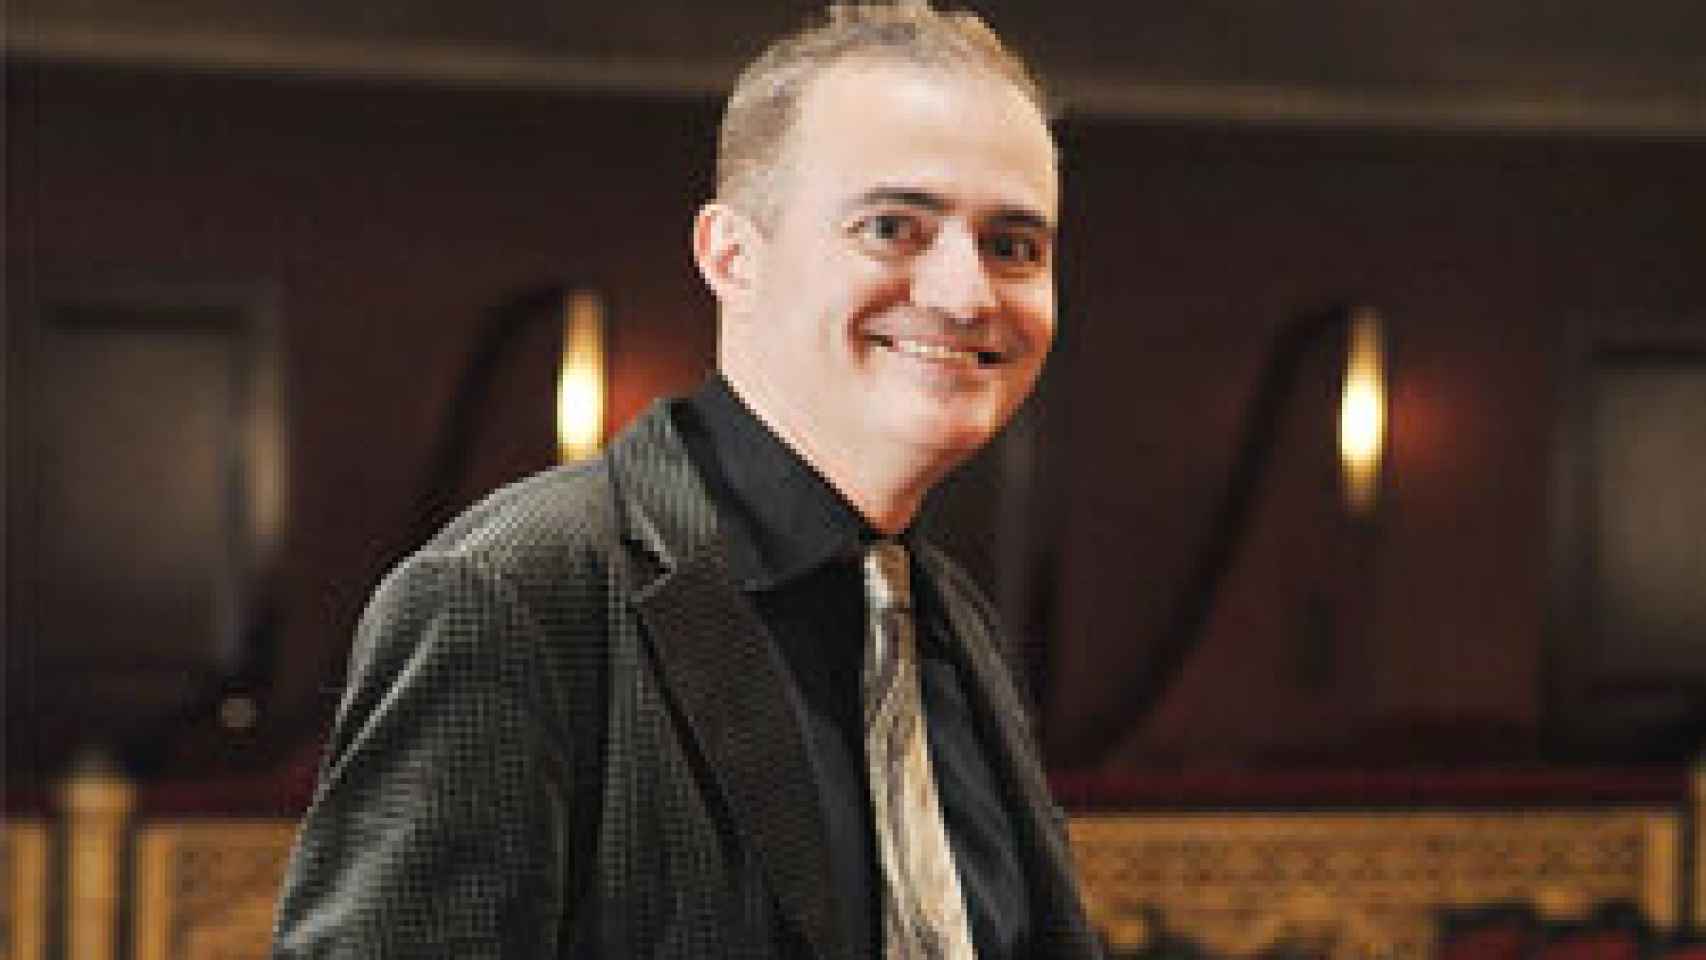 Image: Joan Matabosch se perfila como sucesor de Gerard Mortier en el Teatro Real